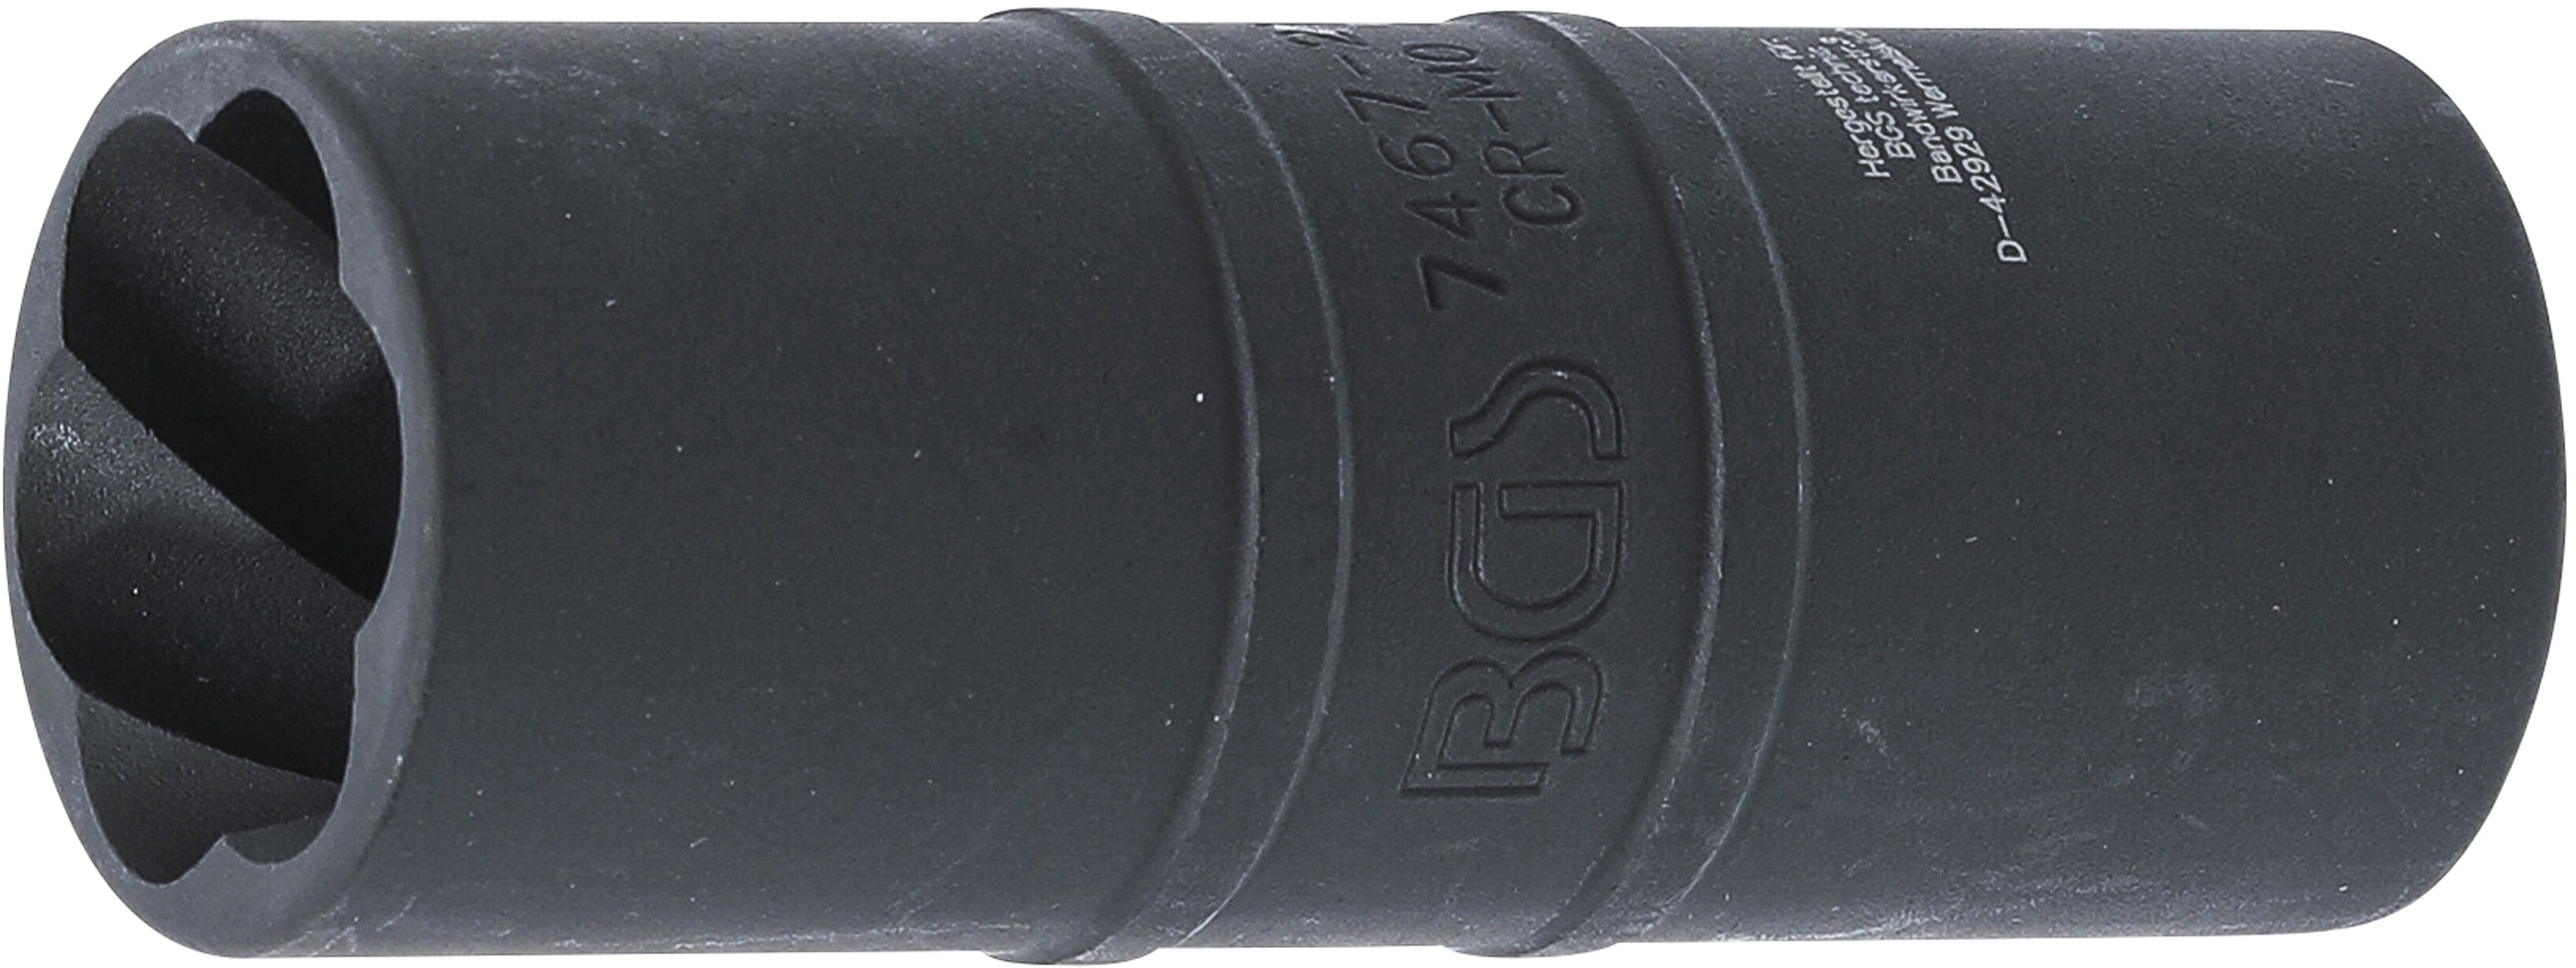 BGS Kraft-Spezial-Schraubenausdreh-Wendeeinsatz 21 mm | 12,5 mm (1/2")